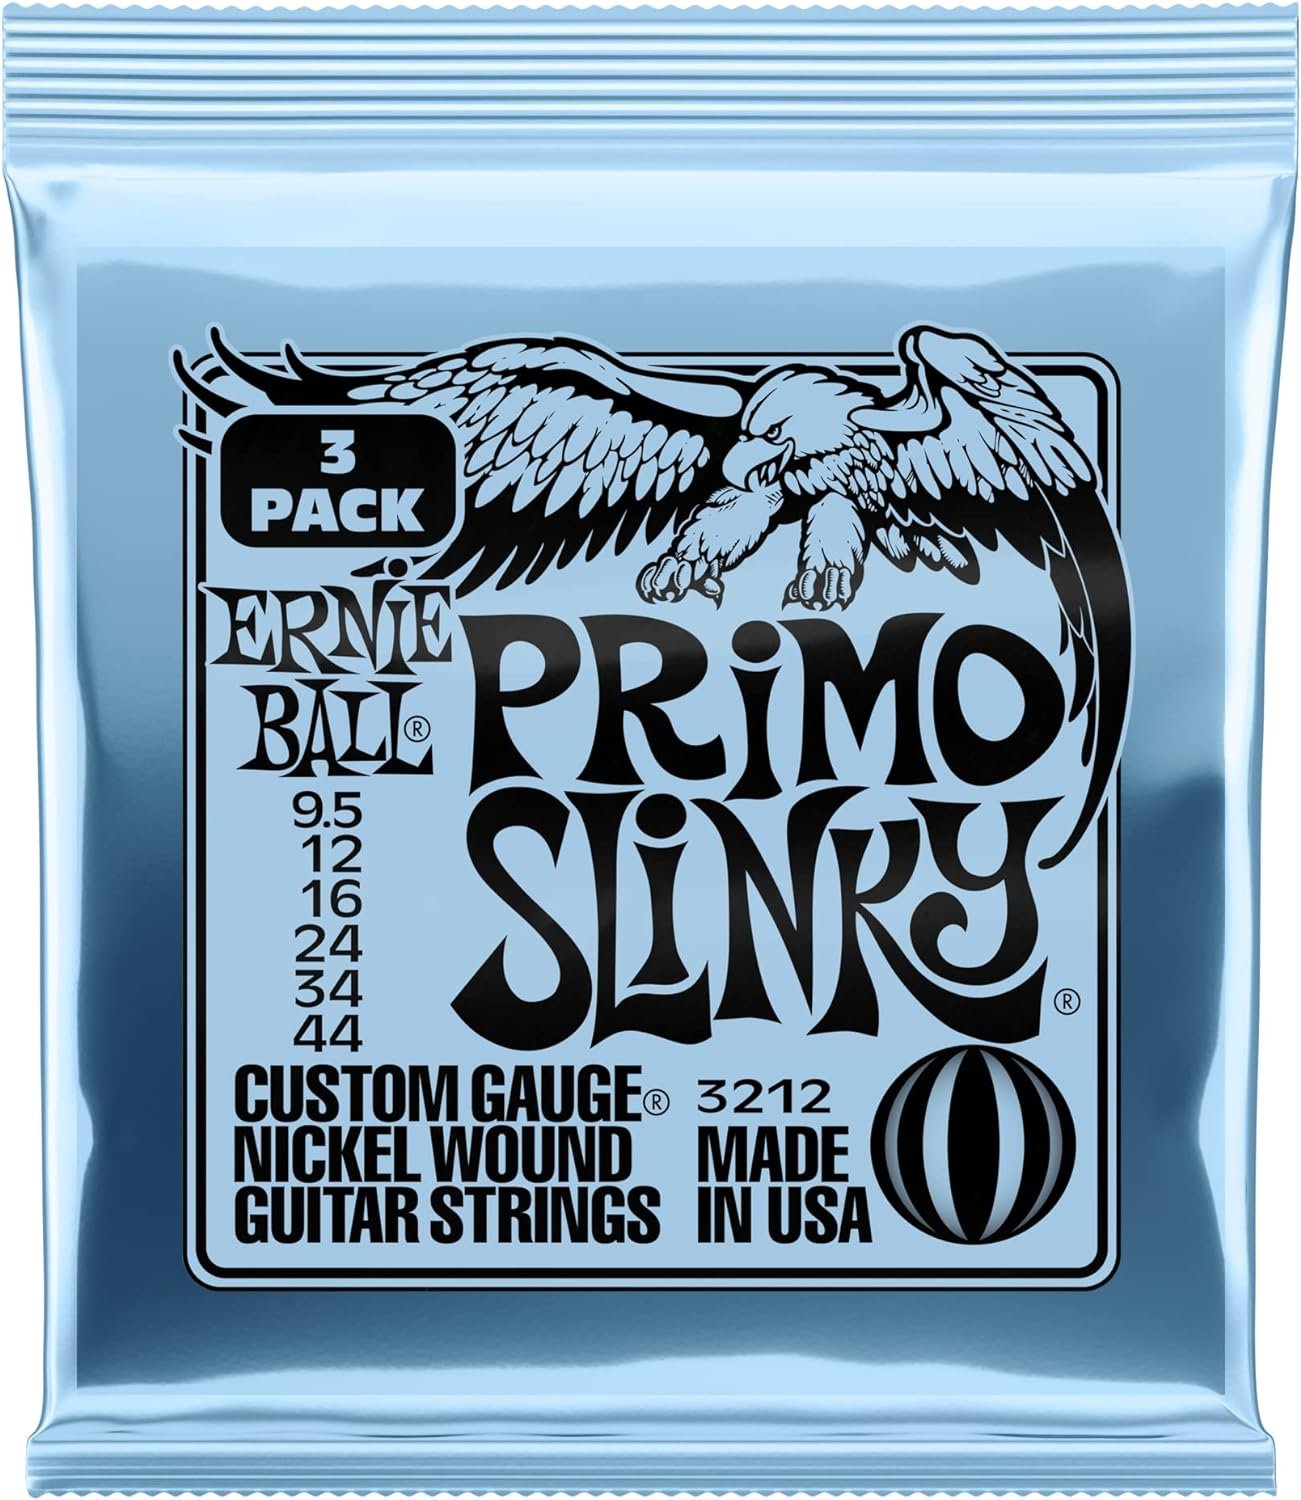 Ernie Ball Regular Slinky Nickel Wound Electric Guitar Strings Amazon Exclusive 4-Pack - 10-46 Gauge